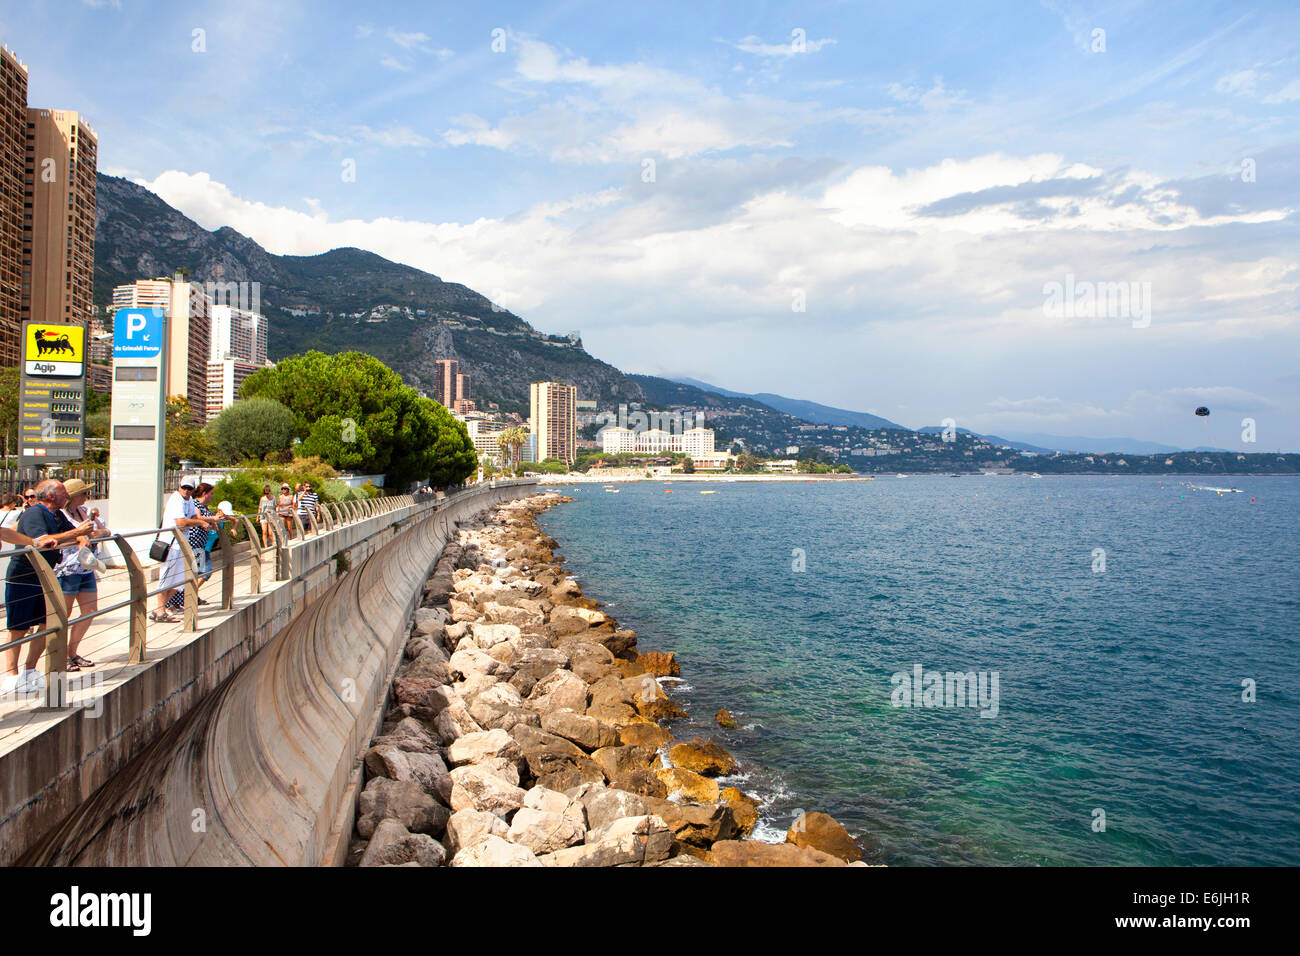 Monte Carlo zona costera en un área del Principado de Mónaco Foto de stock